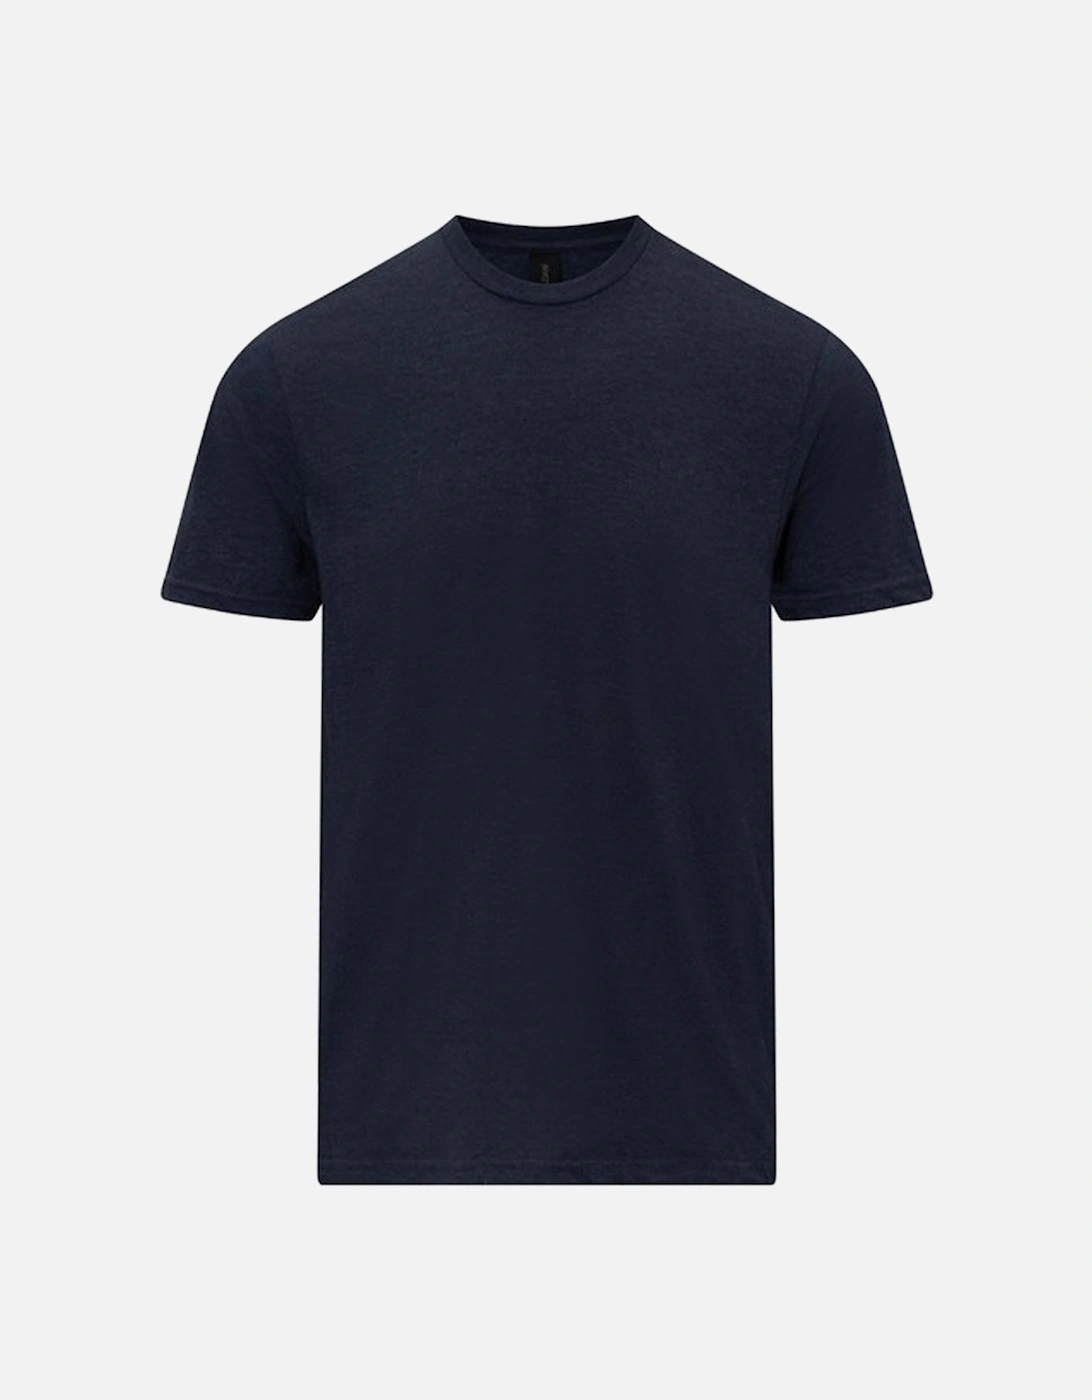 Unisex Adult Softstyle CVC T-Shirt, 2 of 1